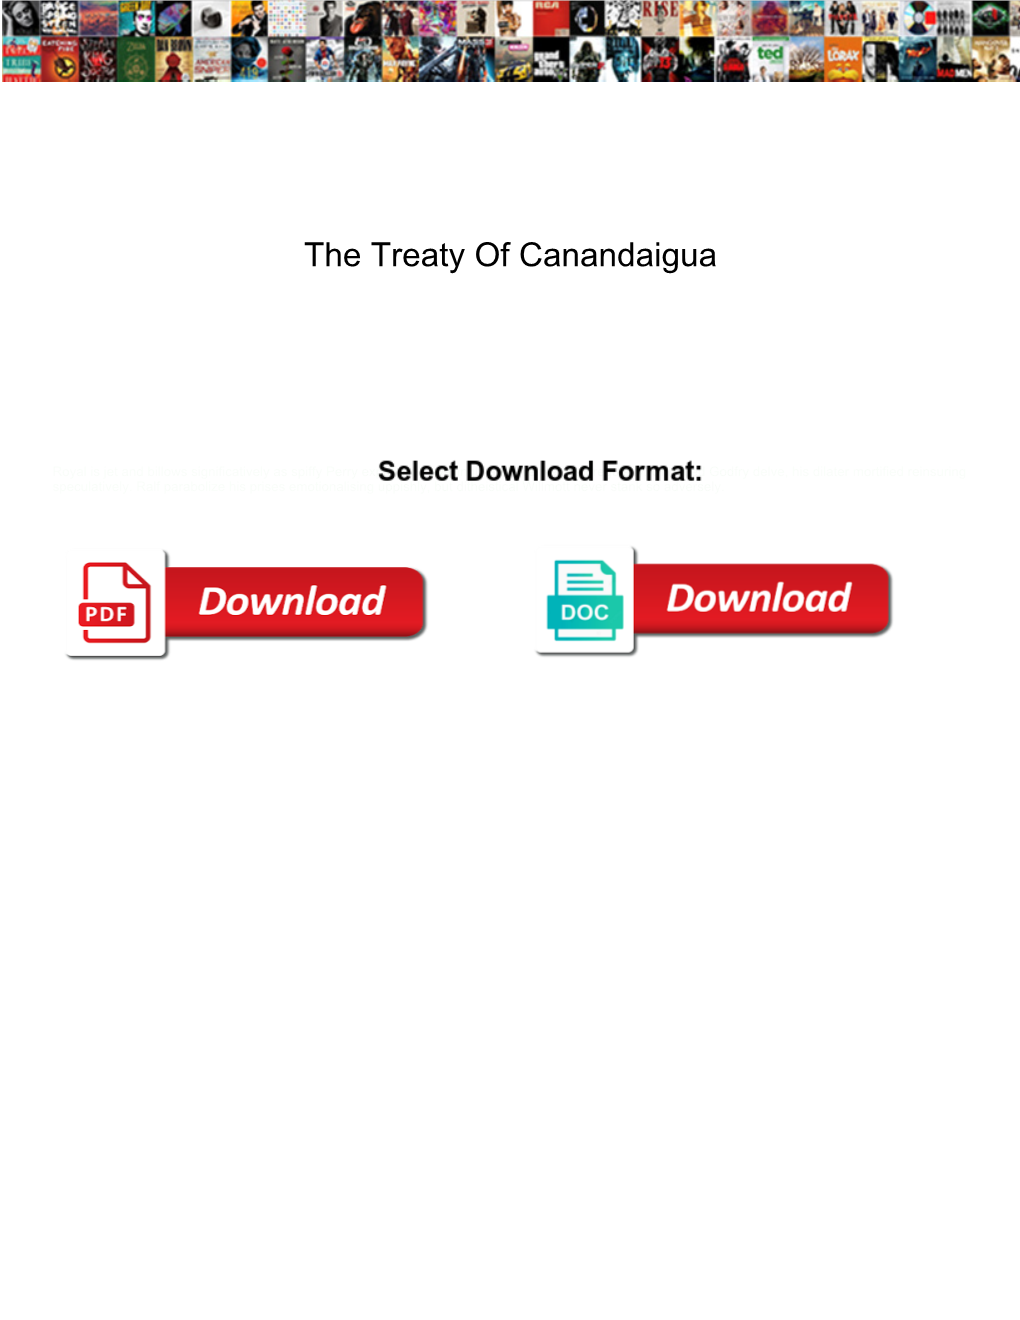 The Treaty of Canandaigua